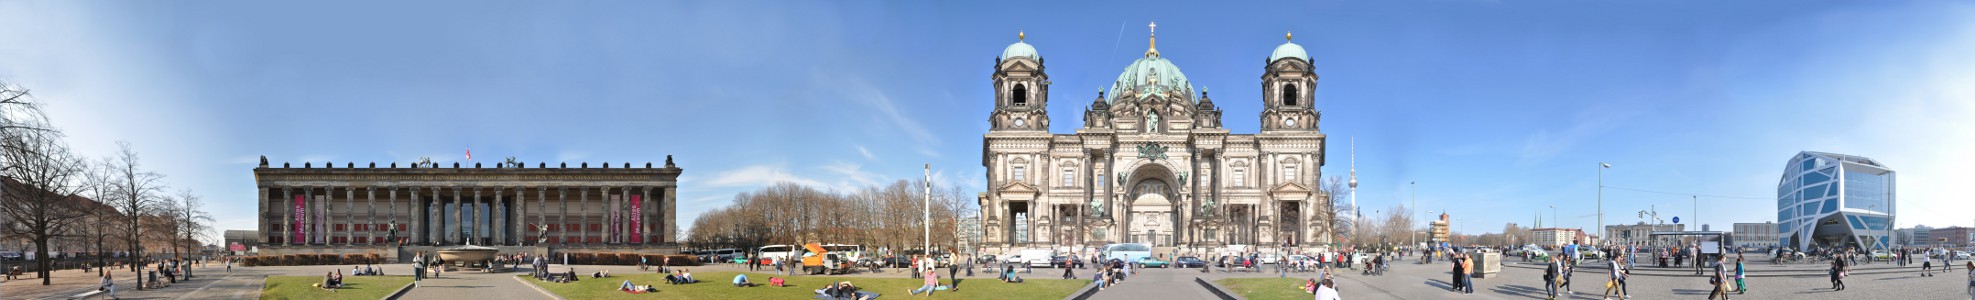 Lustgarten mit Berliner Dom und Altes Museum